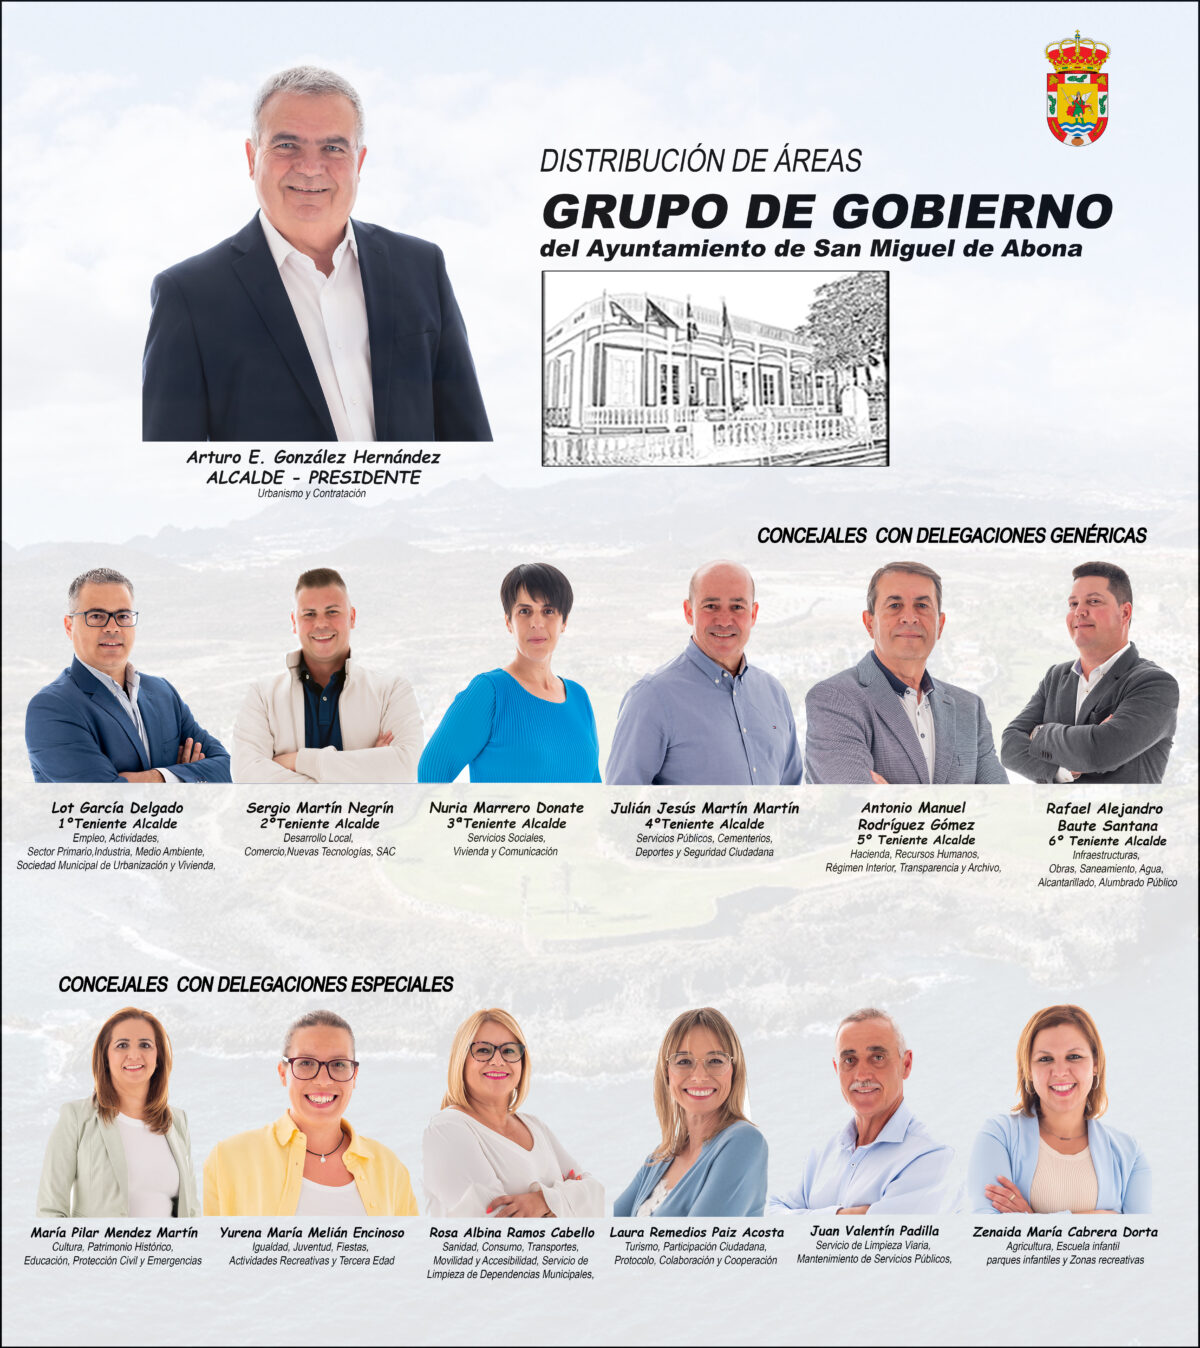 Delegadas las competencias del Ayuntamiento de San Miguel de Abona